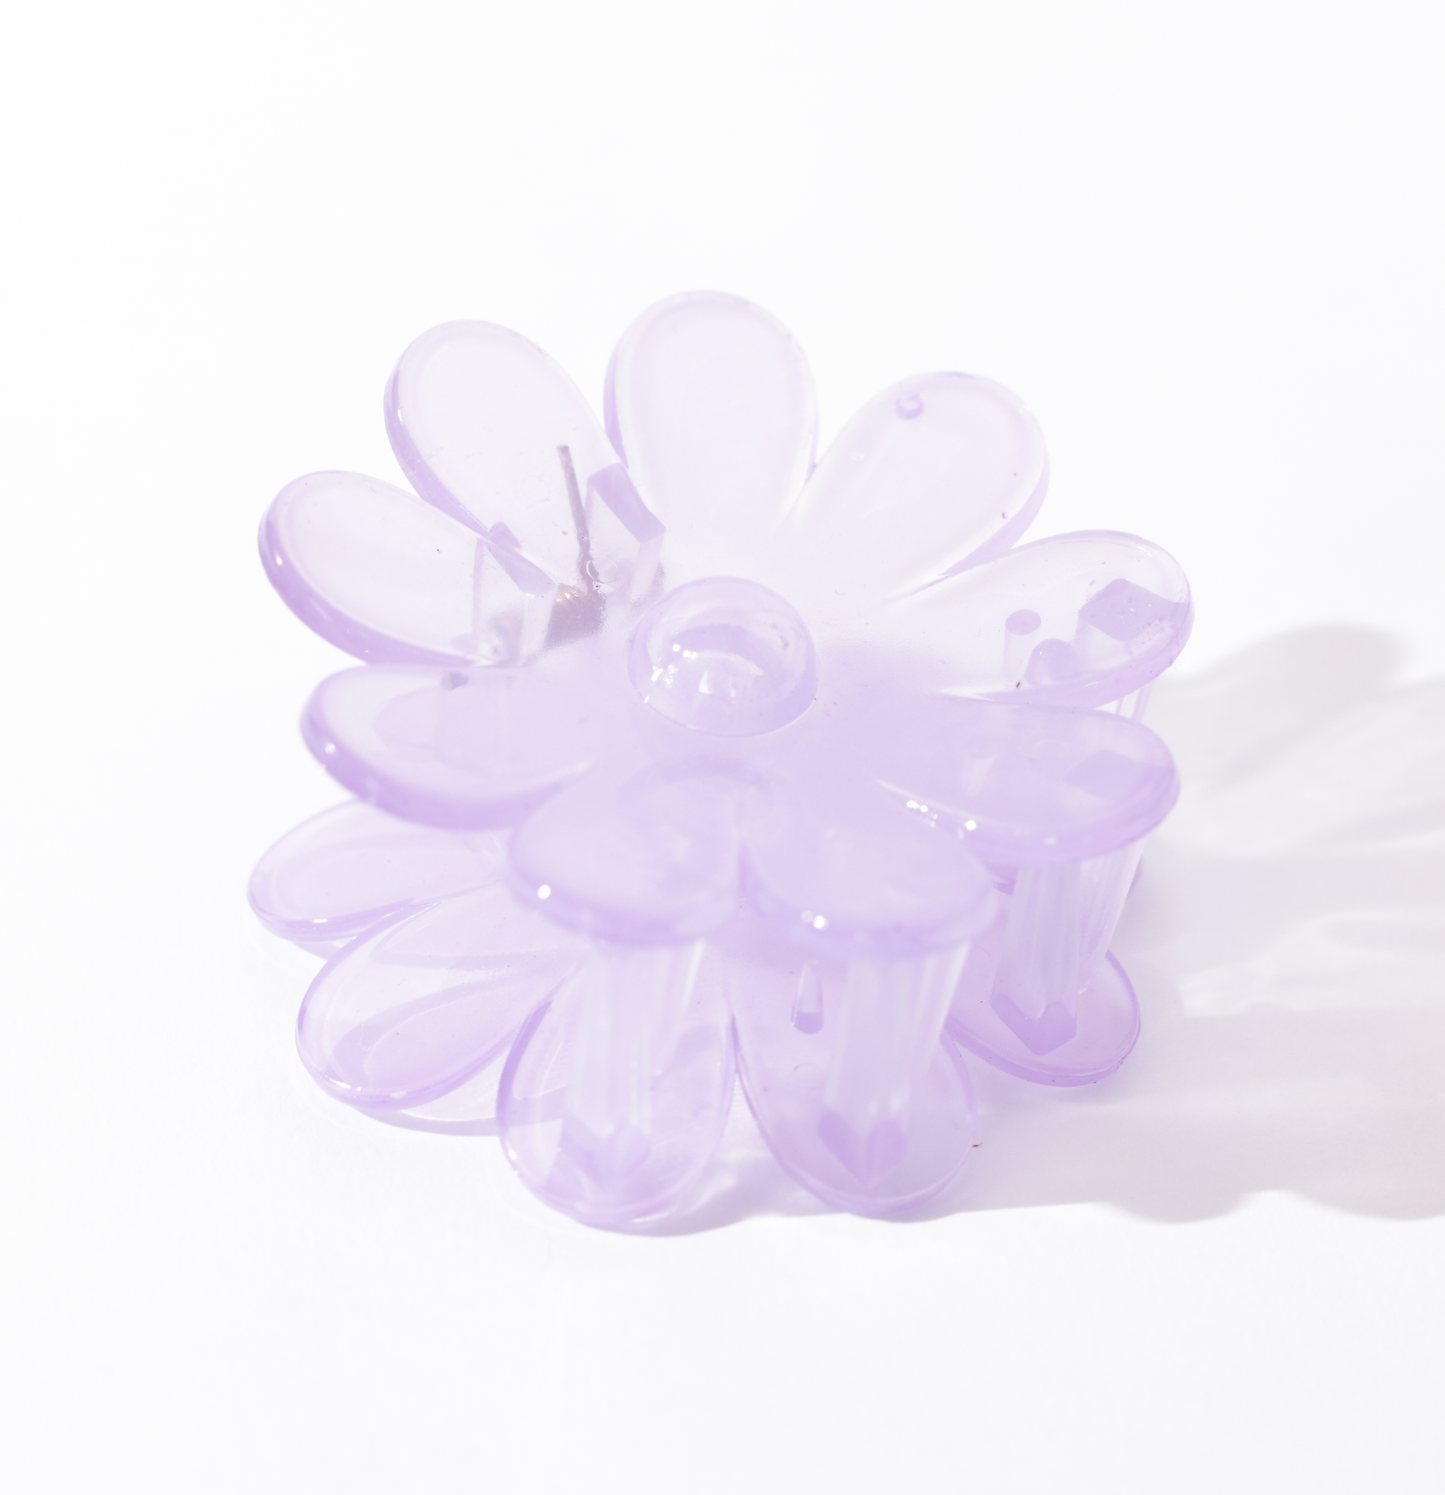 Piranha margarida lilás transparente